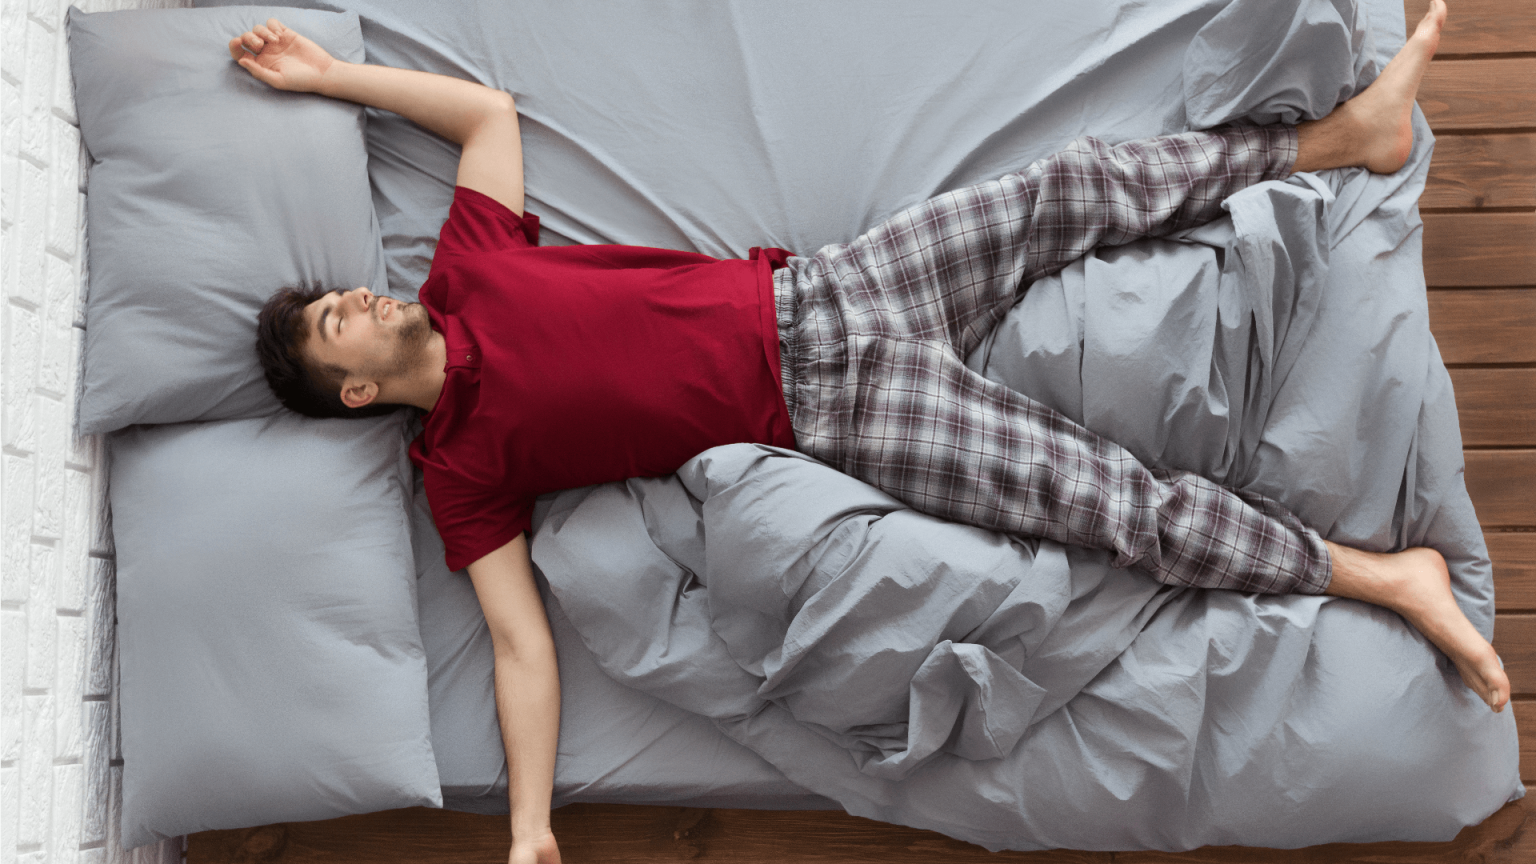 Пижаме ляжет. Человек в кровати. Спящий мужчина в пижаме.